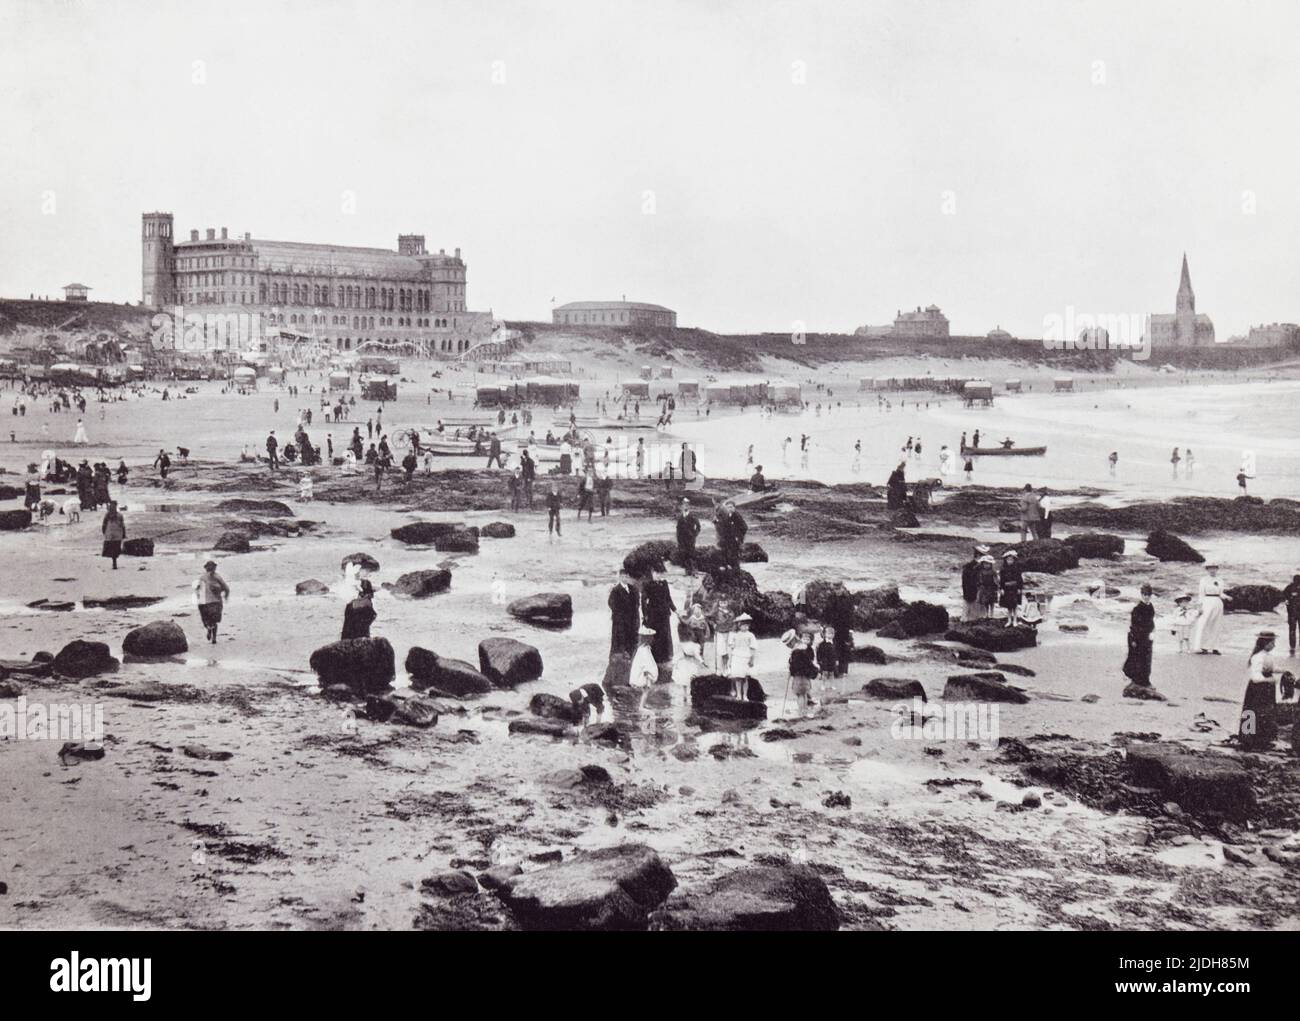 Tynemouth, North Tyneside, England, das Aquarium und Sand, hier im 19.. Jahrhundert gesehen. Aus der ganzen Küste, ein Album mit Bildern von Fotografien der Chief Seaside Orte von Interesse in Großbritannien und Irland veröffentlicht London, 1895, von George Newnes Limited. Stockfoto